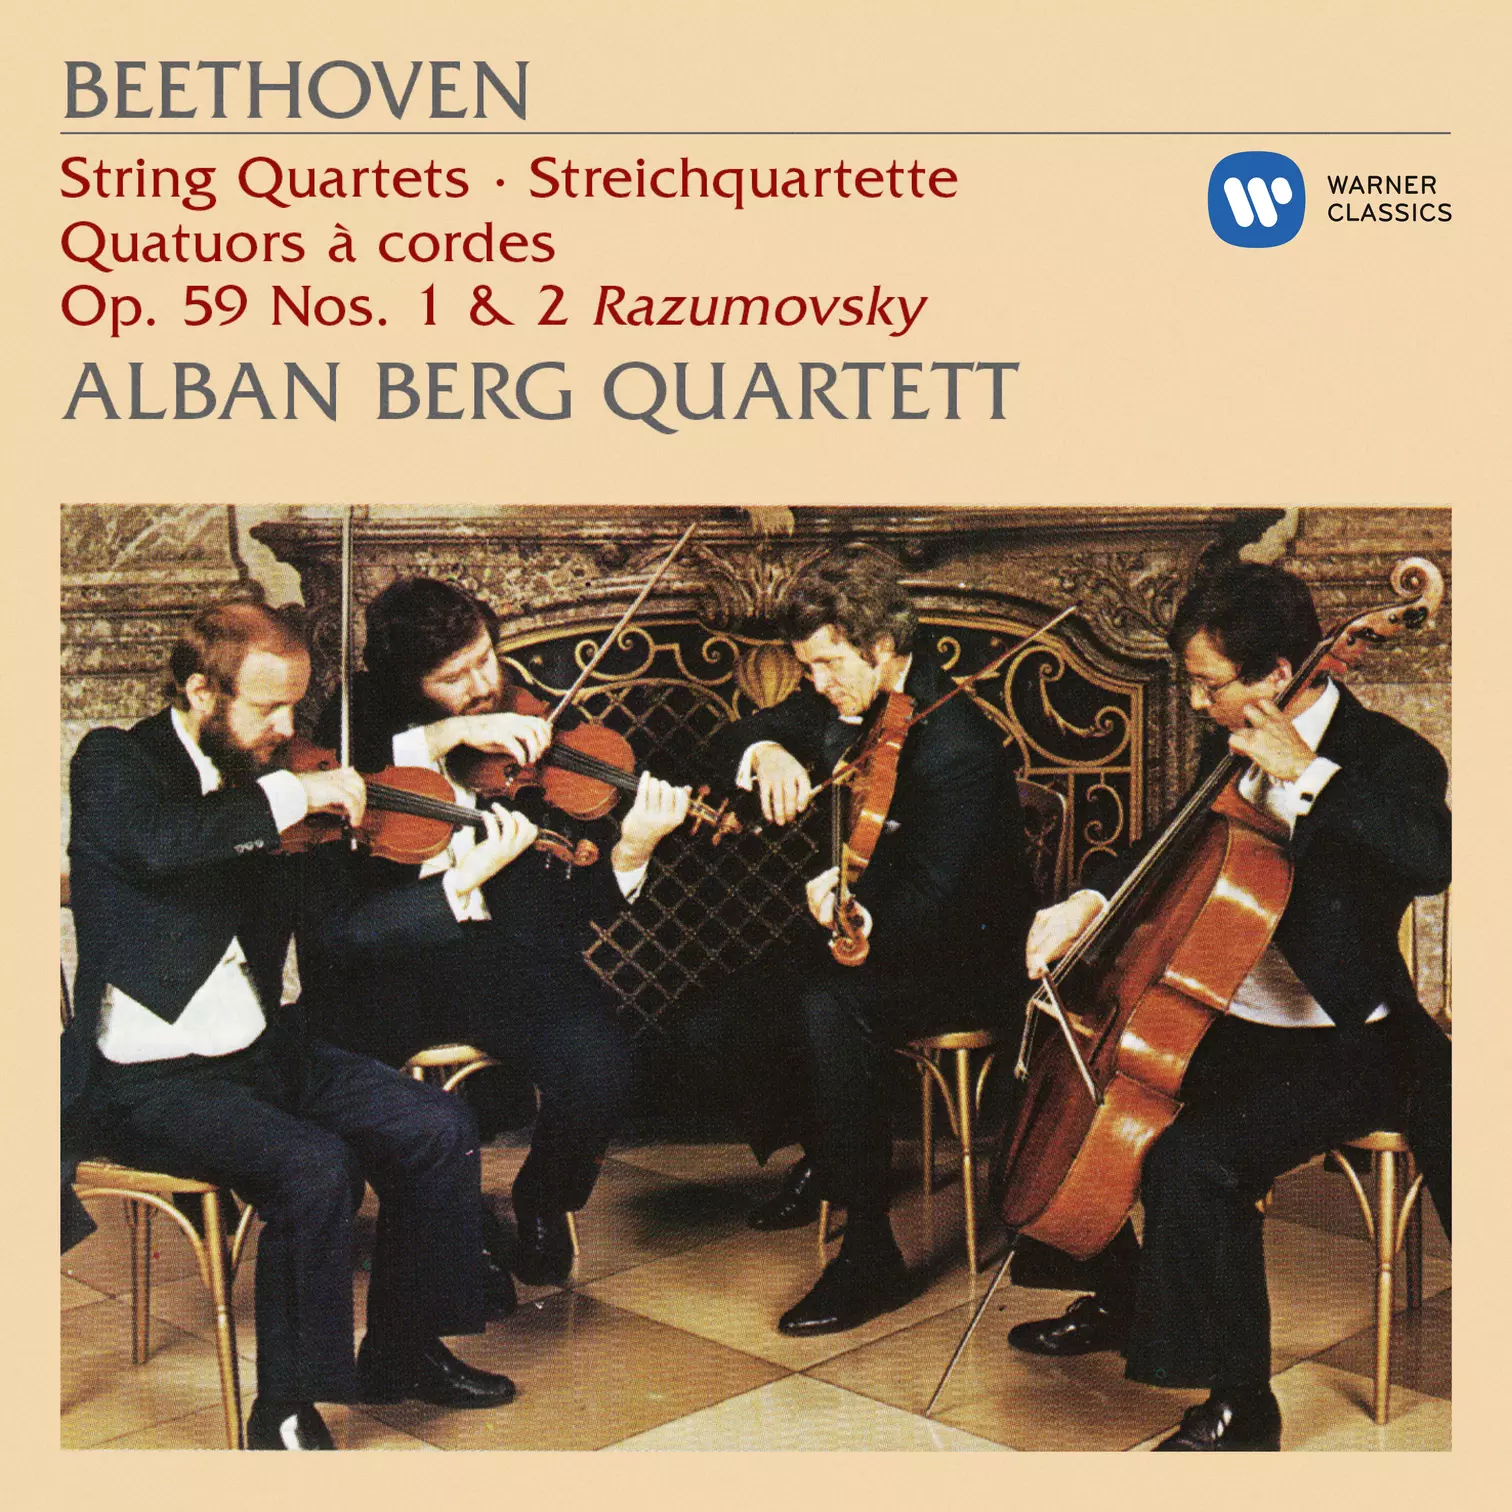 Beethoven: String Quartets, Op. 59 Nos. 1 & 2 “Razumovsky”